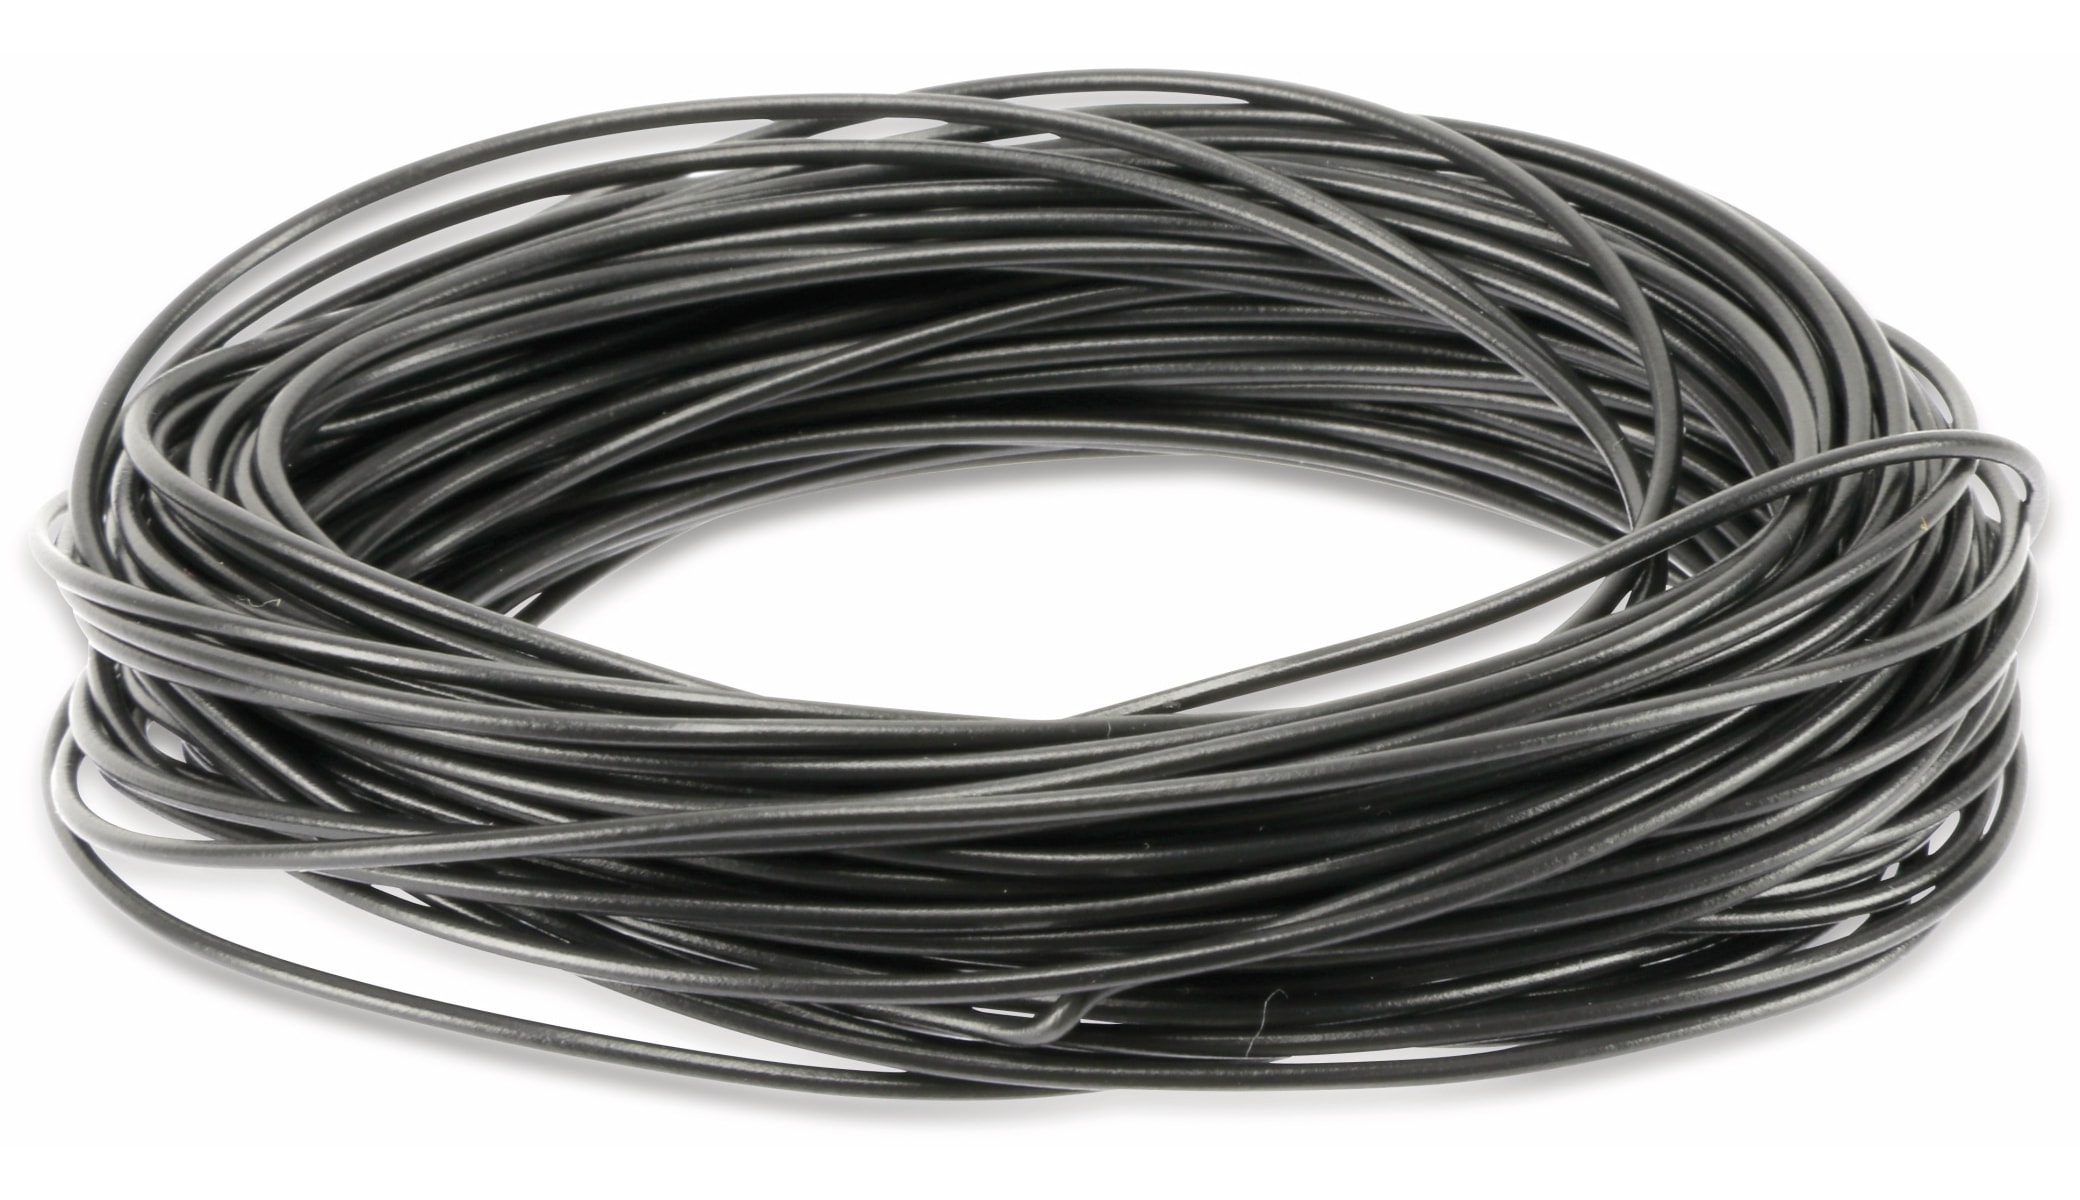 LEONI Schaltlitze LIYW, 0,22 mm², 10 m, schwarz